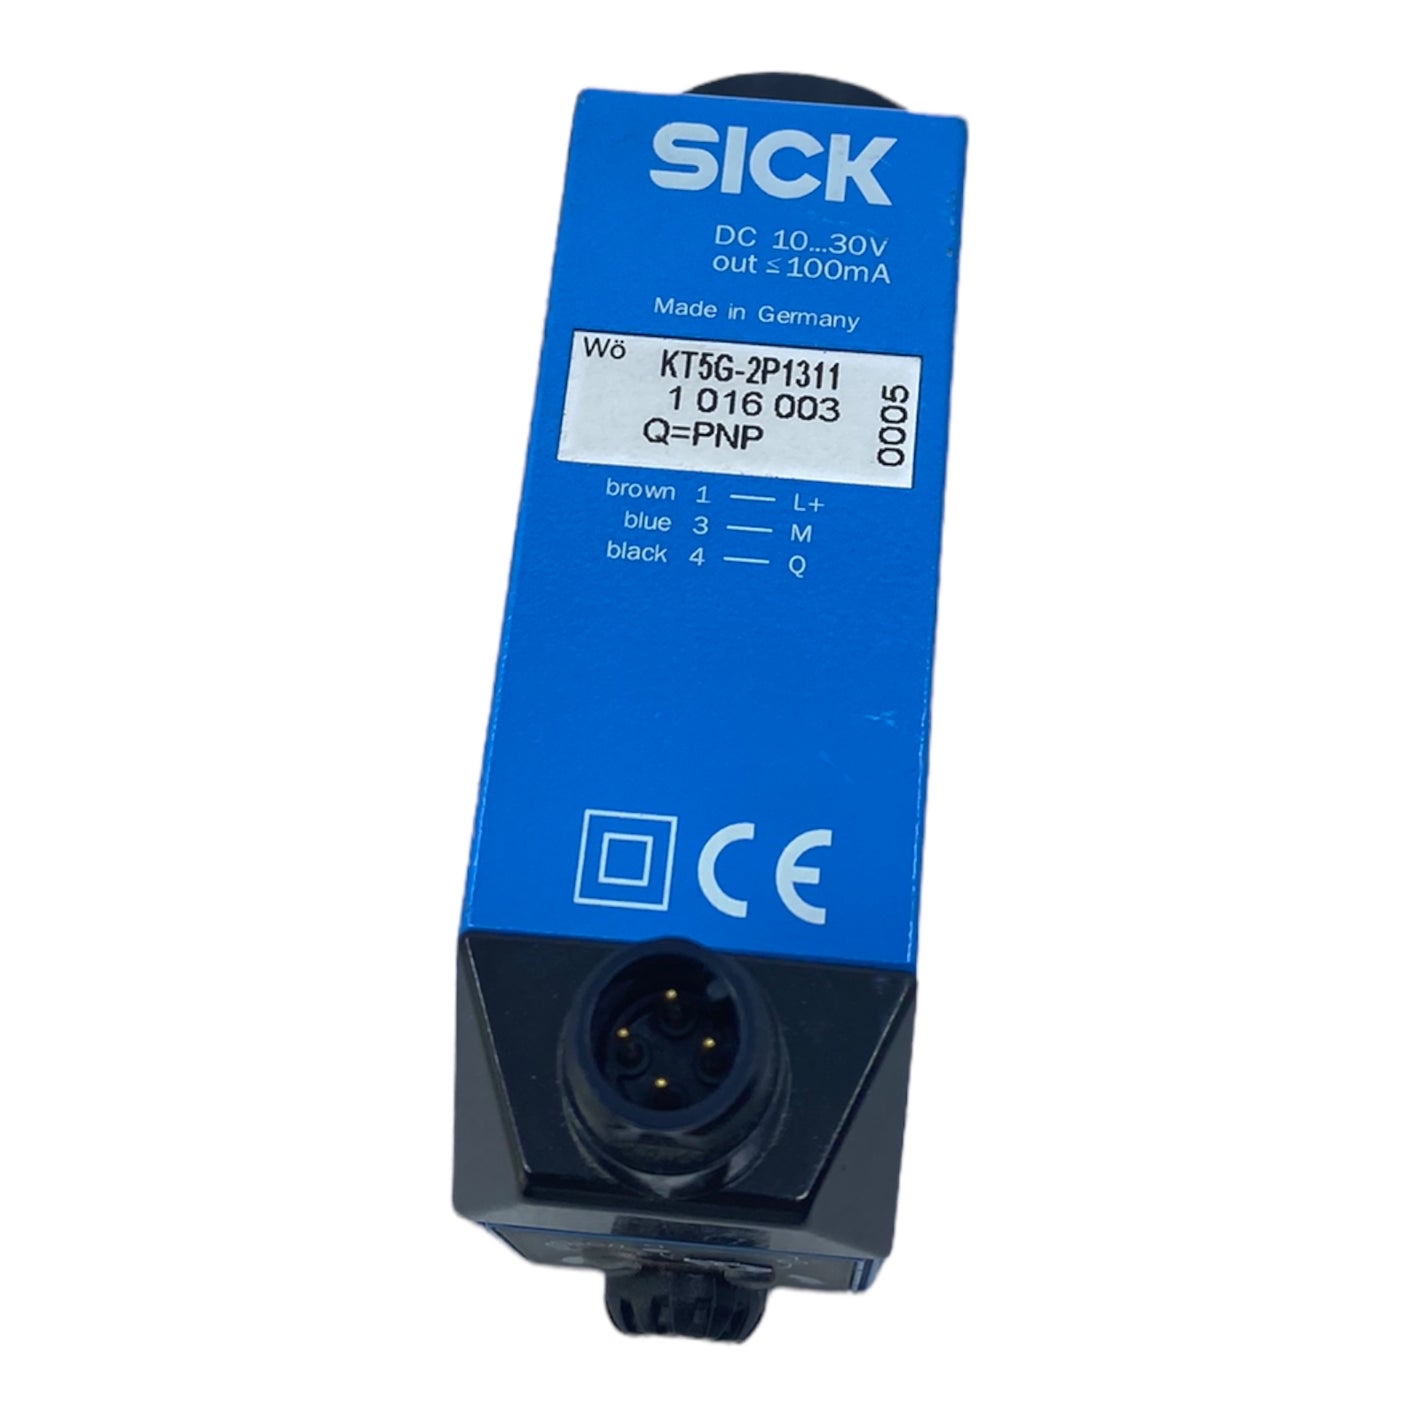 Sick KT5G-2P1311 contrast sensor 10…30V DC 100mA 10 kHz IP67 connector M12 4-pin 